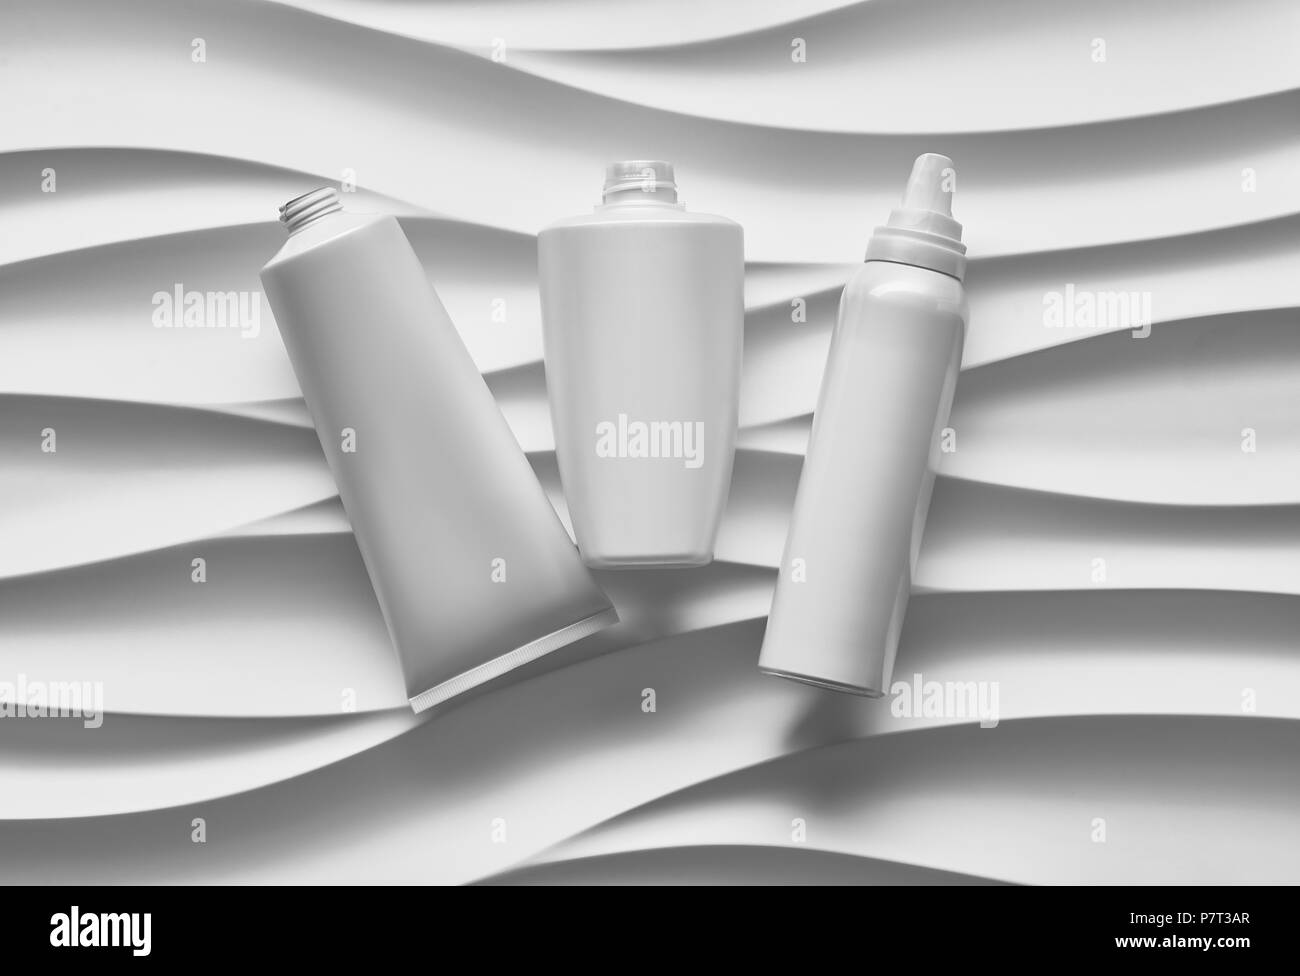 Schönen format Poster mit glatten grauen Wellen abstrakt Hintergrund mit grau-Tonarten, mit sauberen weißen Kunststoffbehälter: Flaschen, cremetopf, t Stockfoto